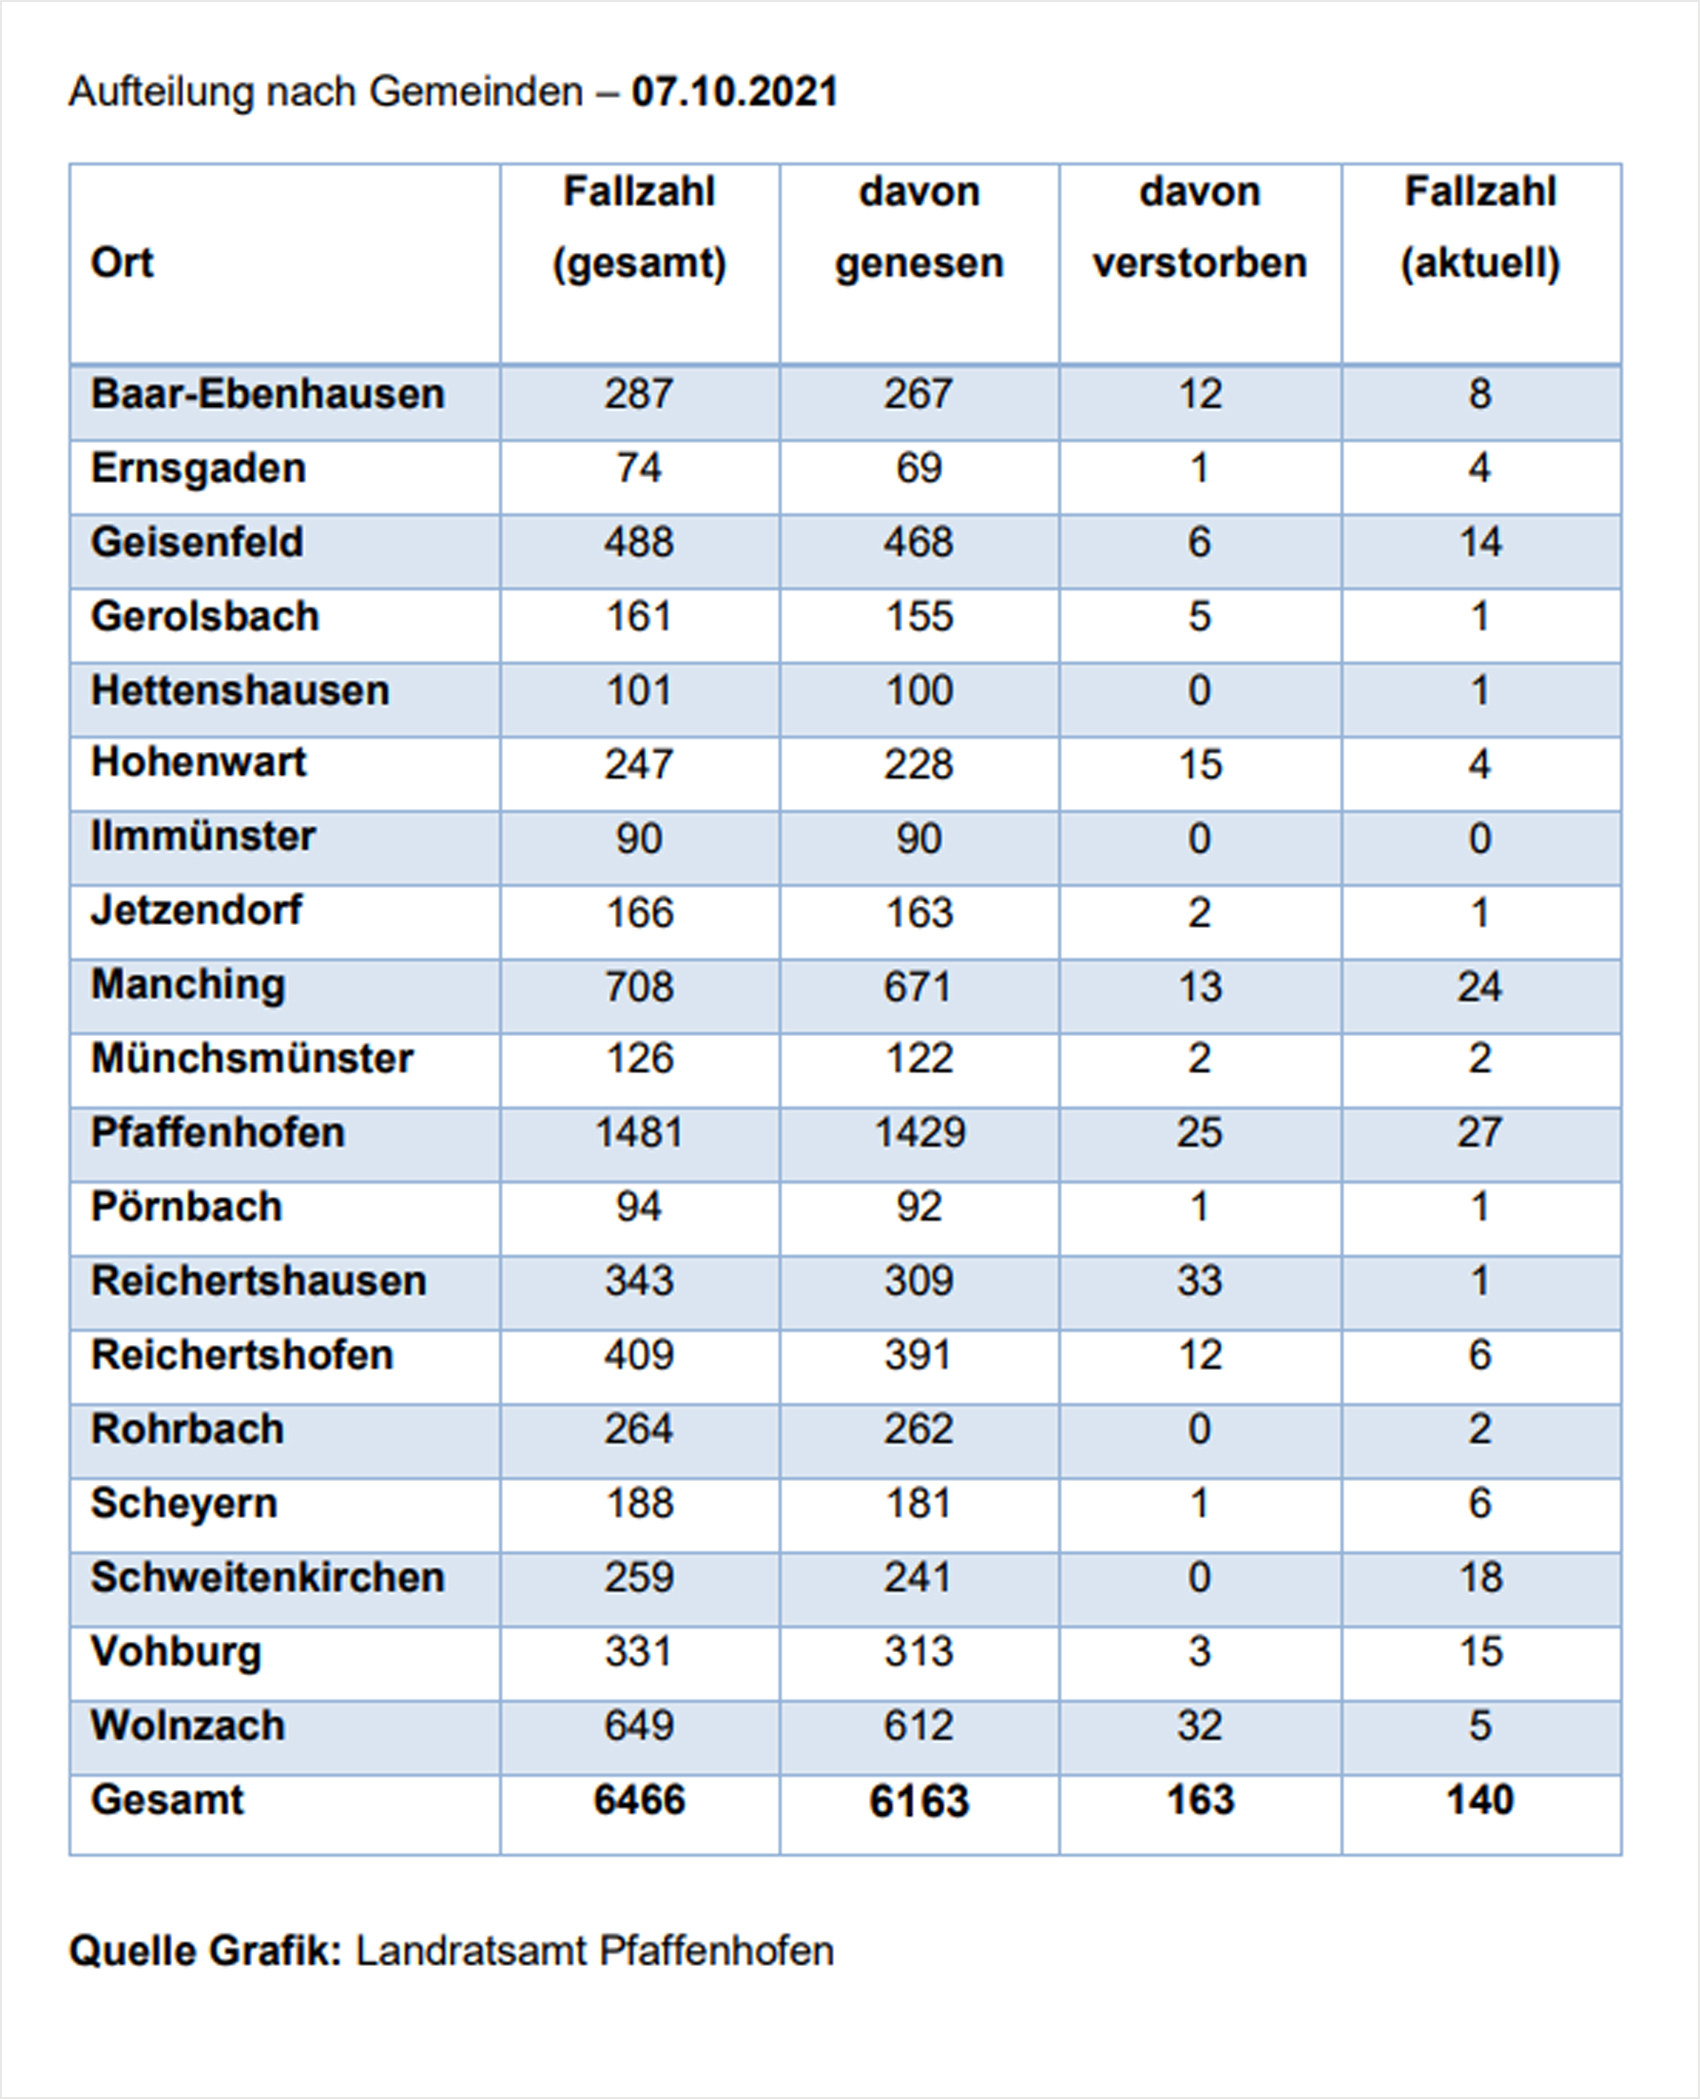 Verteilung der Fallzahlen auf die Landkreisgemeinden - 07.10.2021